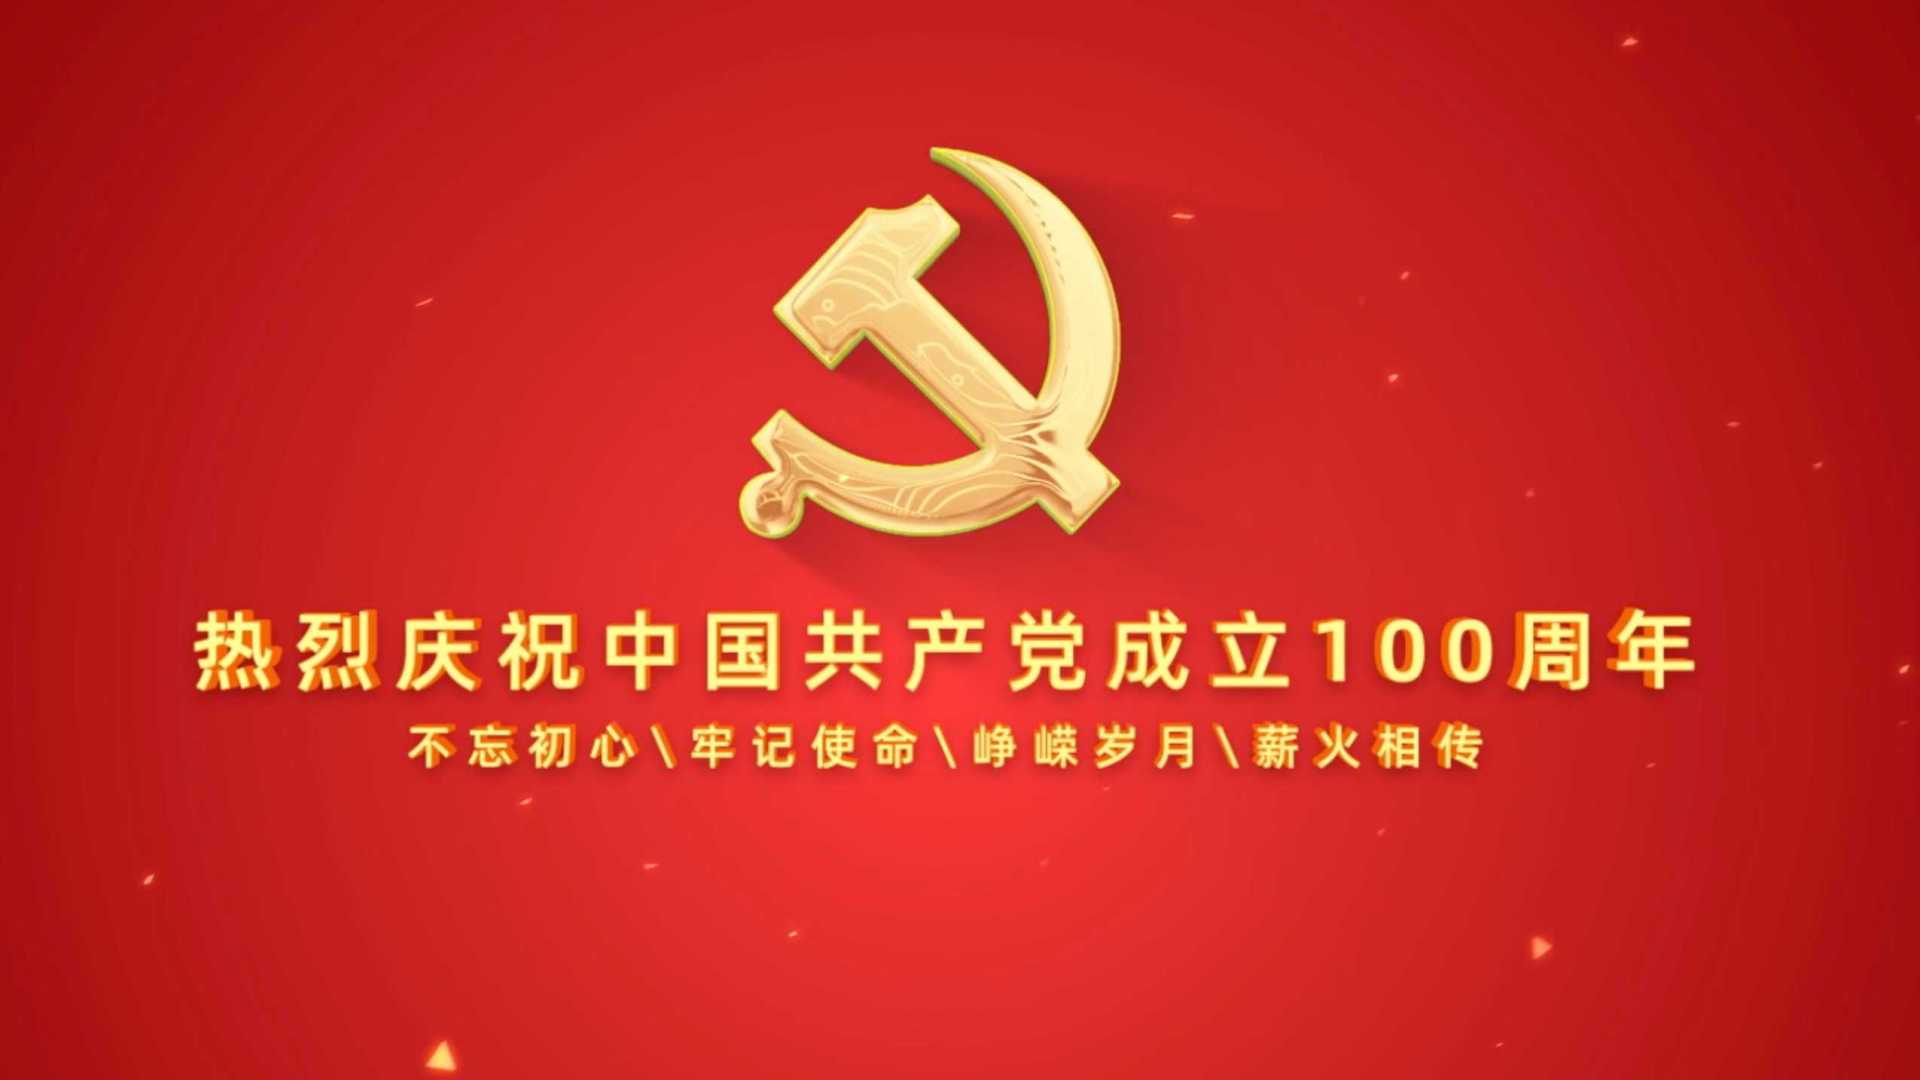 宣传片｜【颂党恩·献祝福】庆祝党建100周年